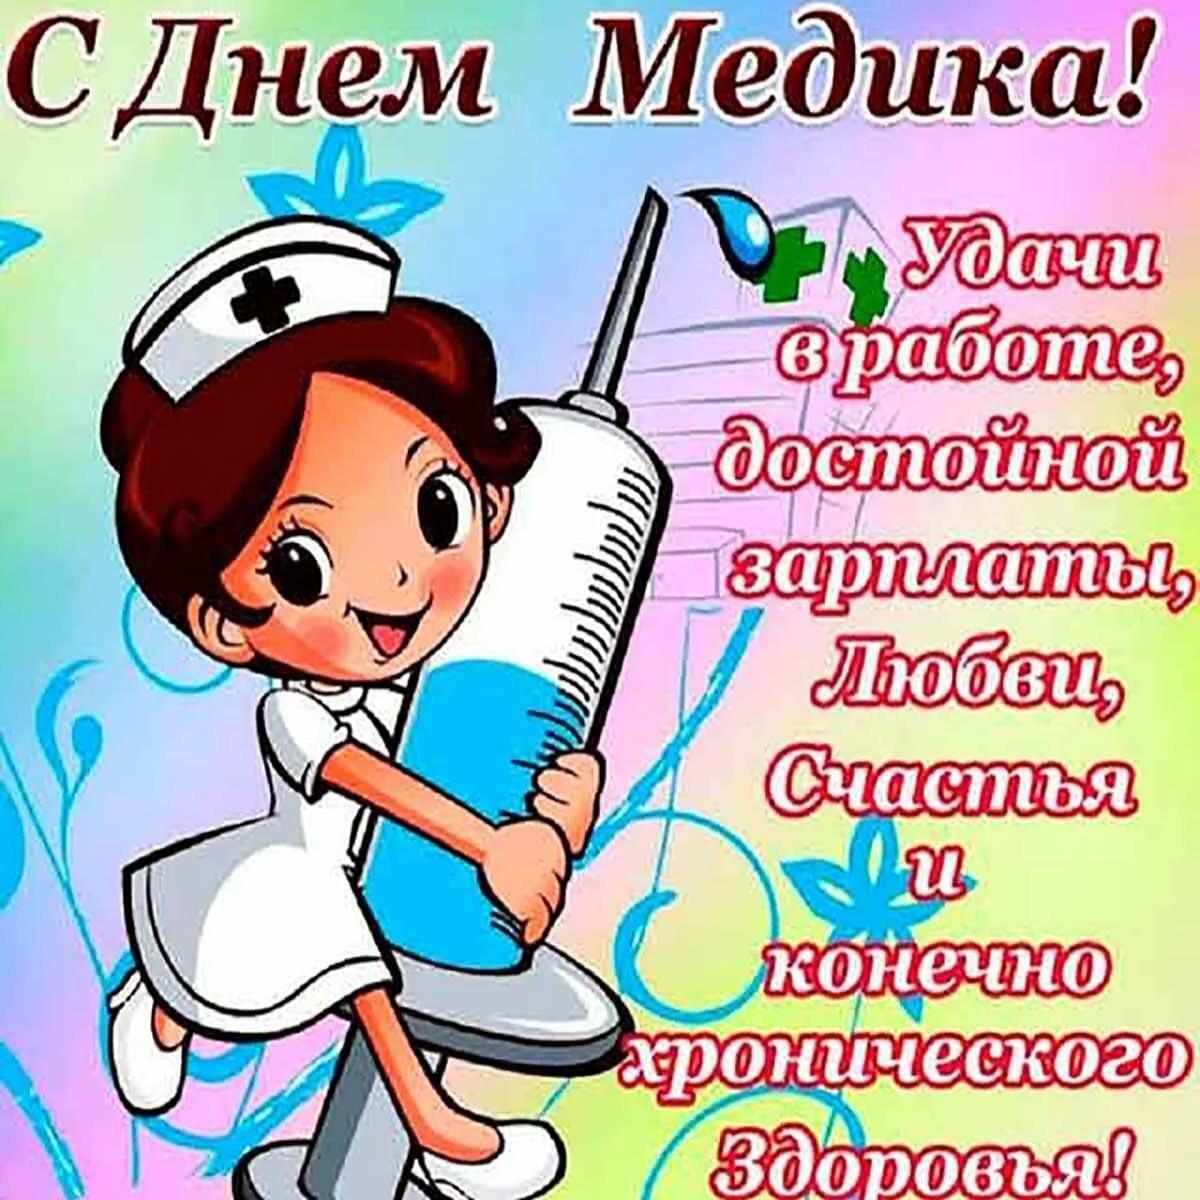 Купить плакат на День медицинского работника в Москве от руб.